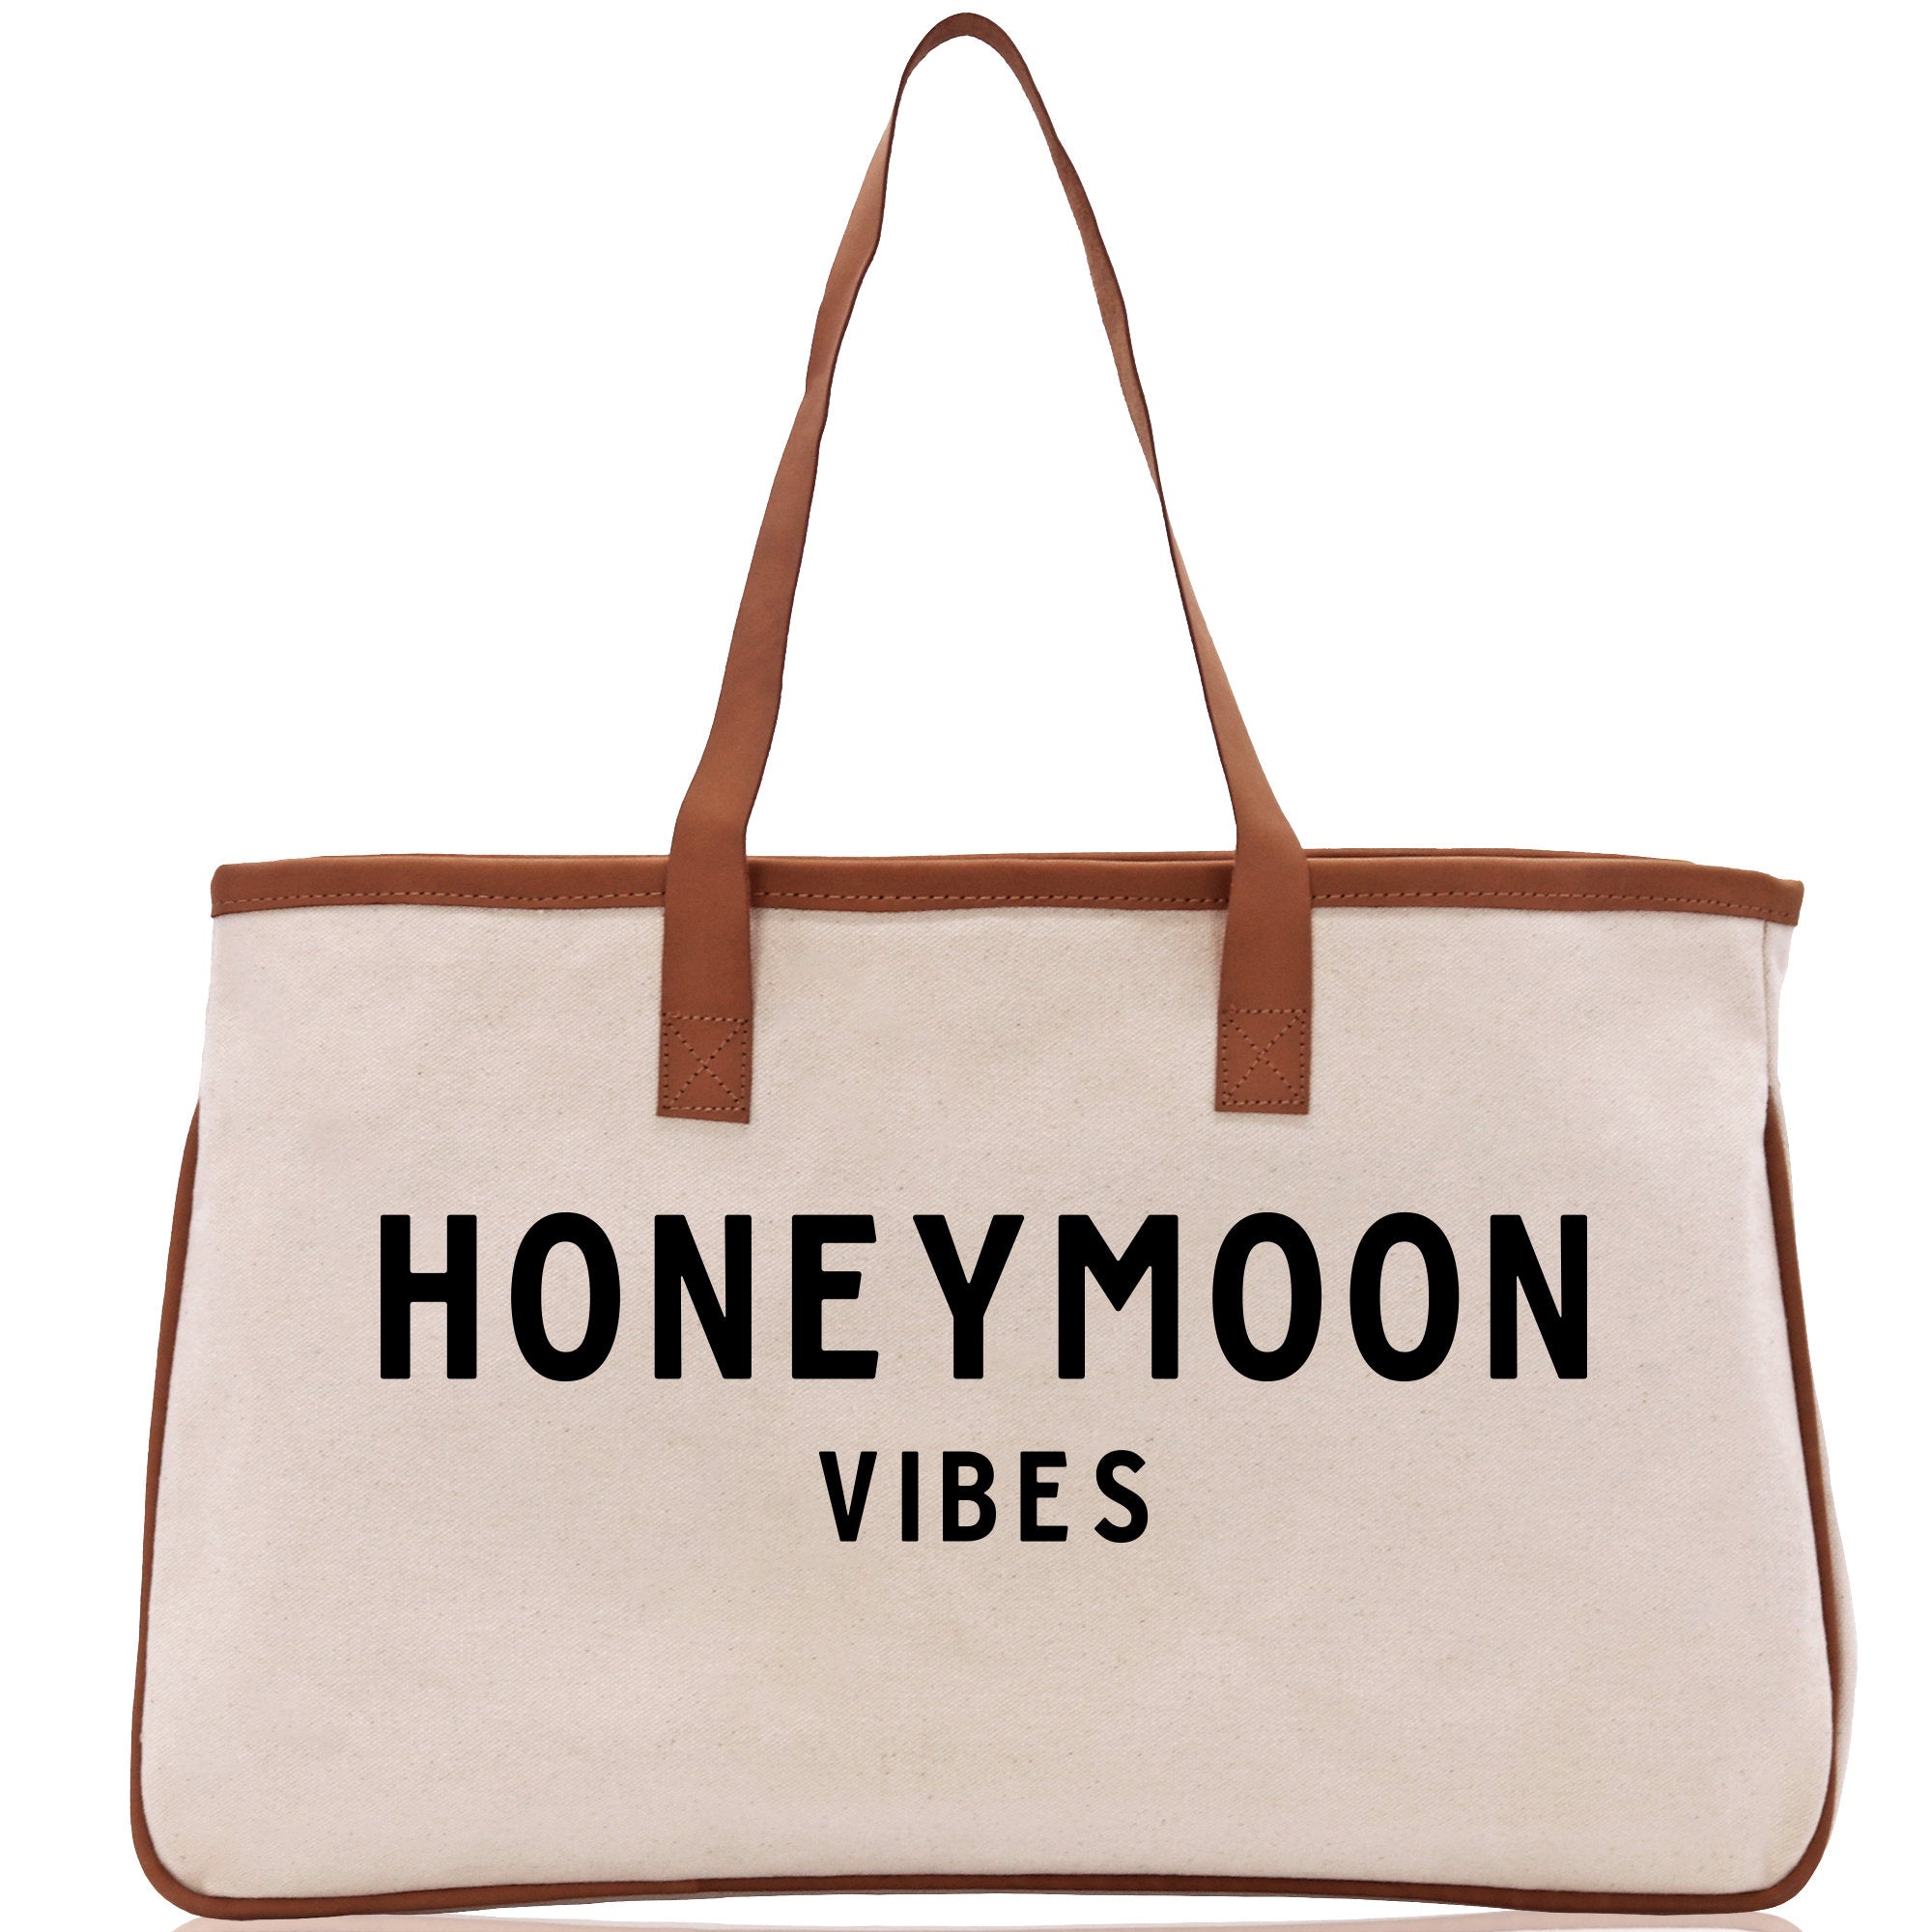 Honeymoon Vibes Beach Tote Bag - Large Chic Tote Bag - Gift for Her - Weekender Bag - Honeymooners Honeymoon Gifts Bridal Gift Newlyweds